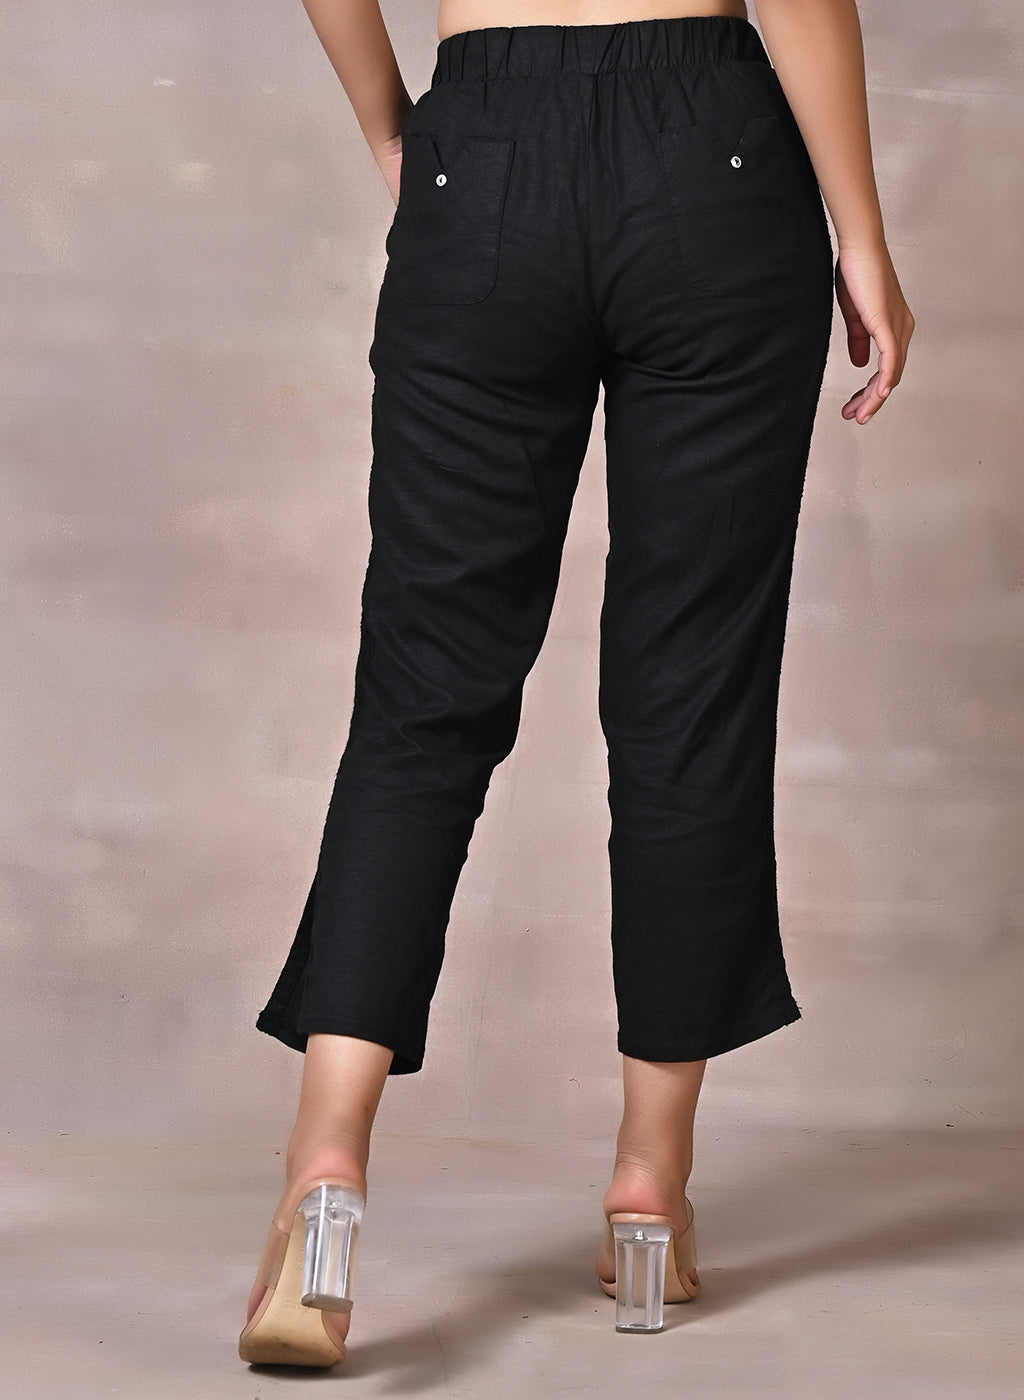 Buy Jockey Black Capri Pants - Style Number - 1300 online